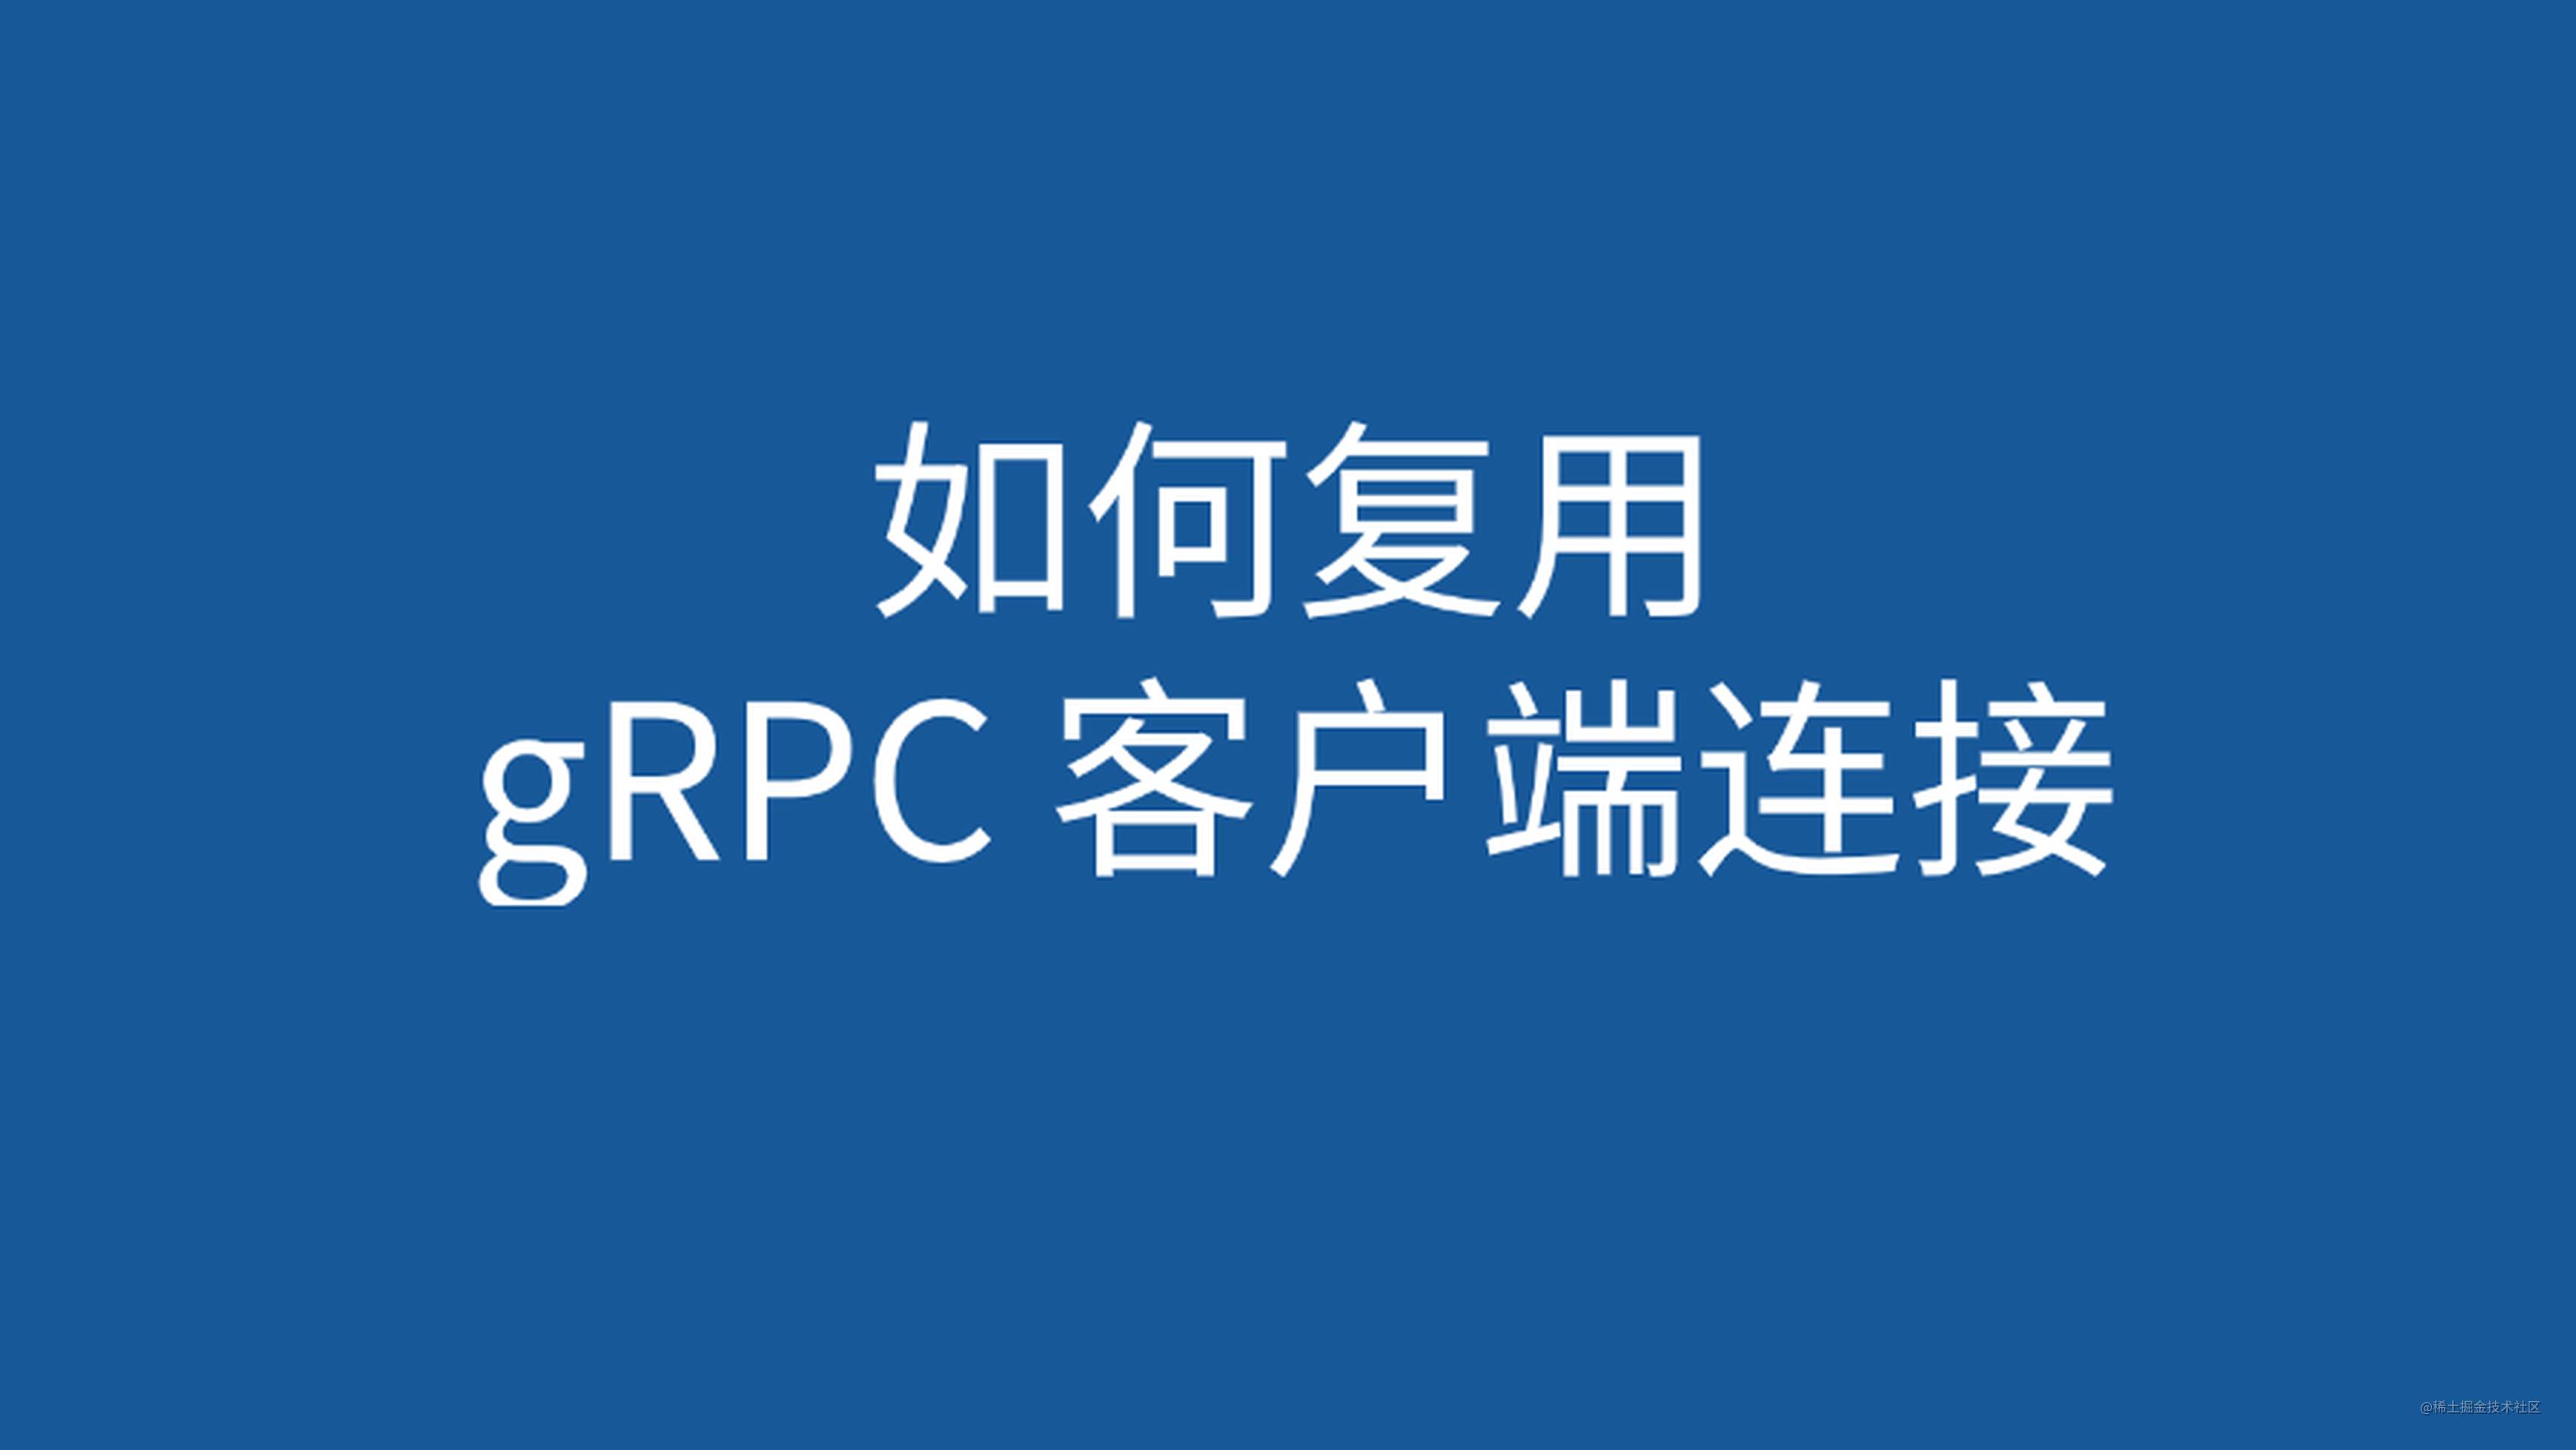 gRPC 客户端调用服务端需要连接池吗？